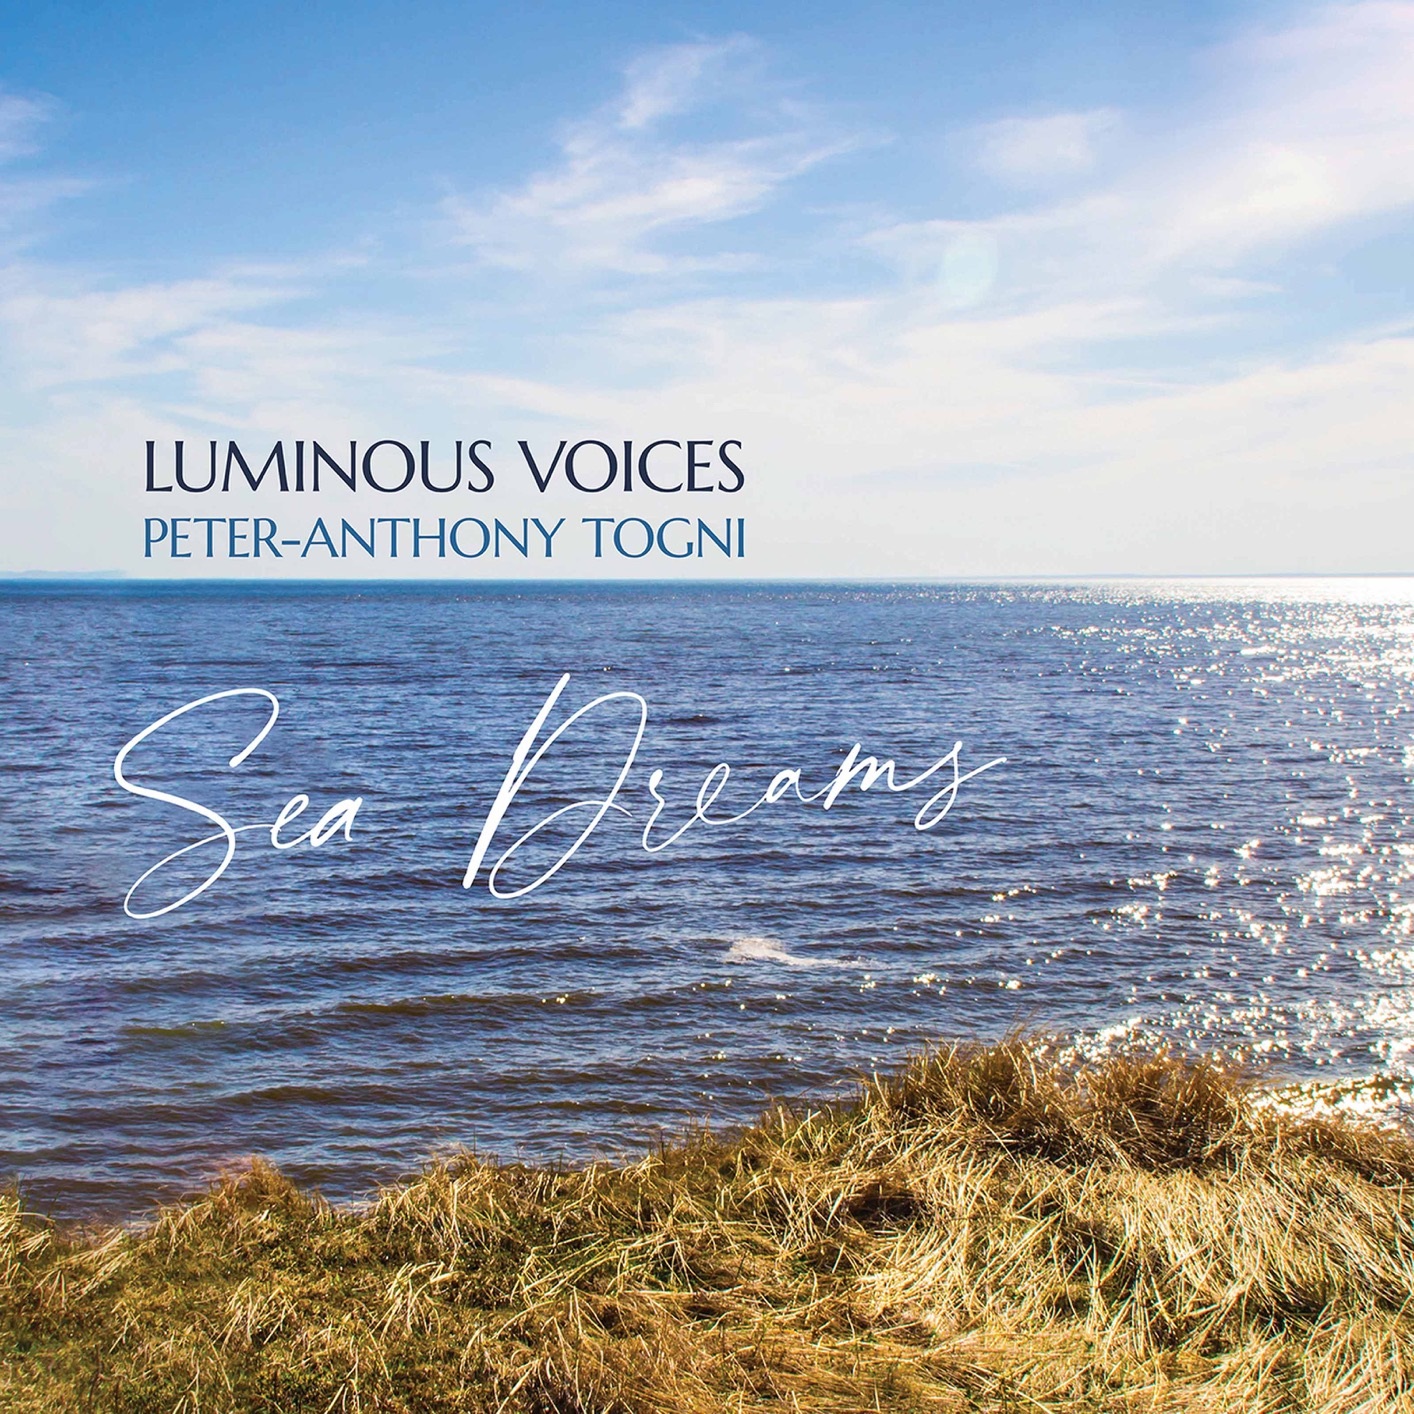 Luminous Voices - Sea Dreams (2020) [FLAC 24bit/96kHz]